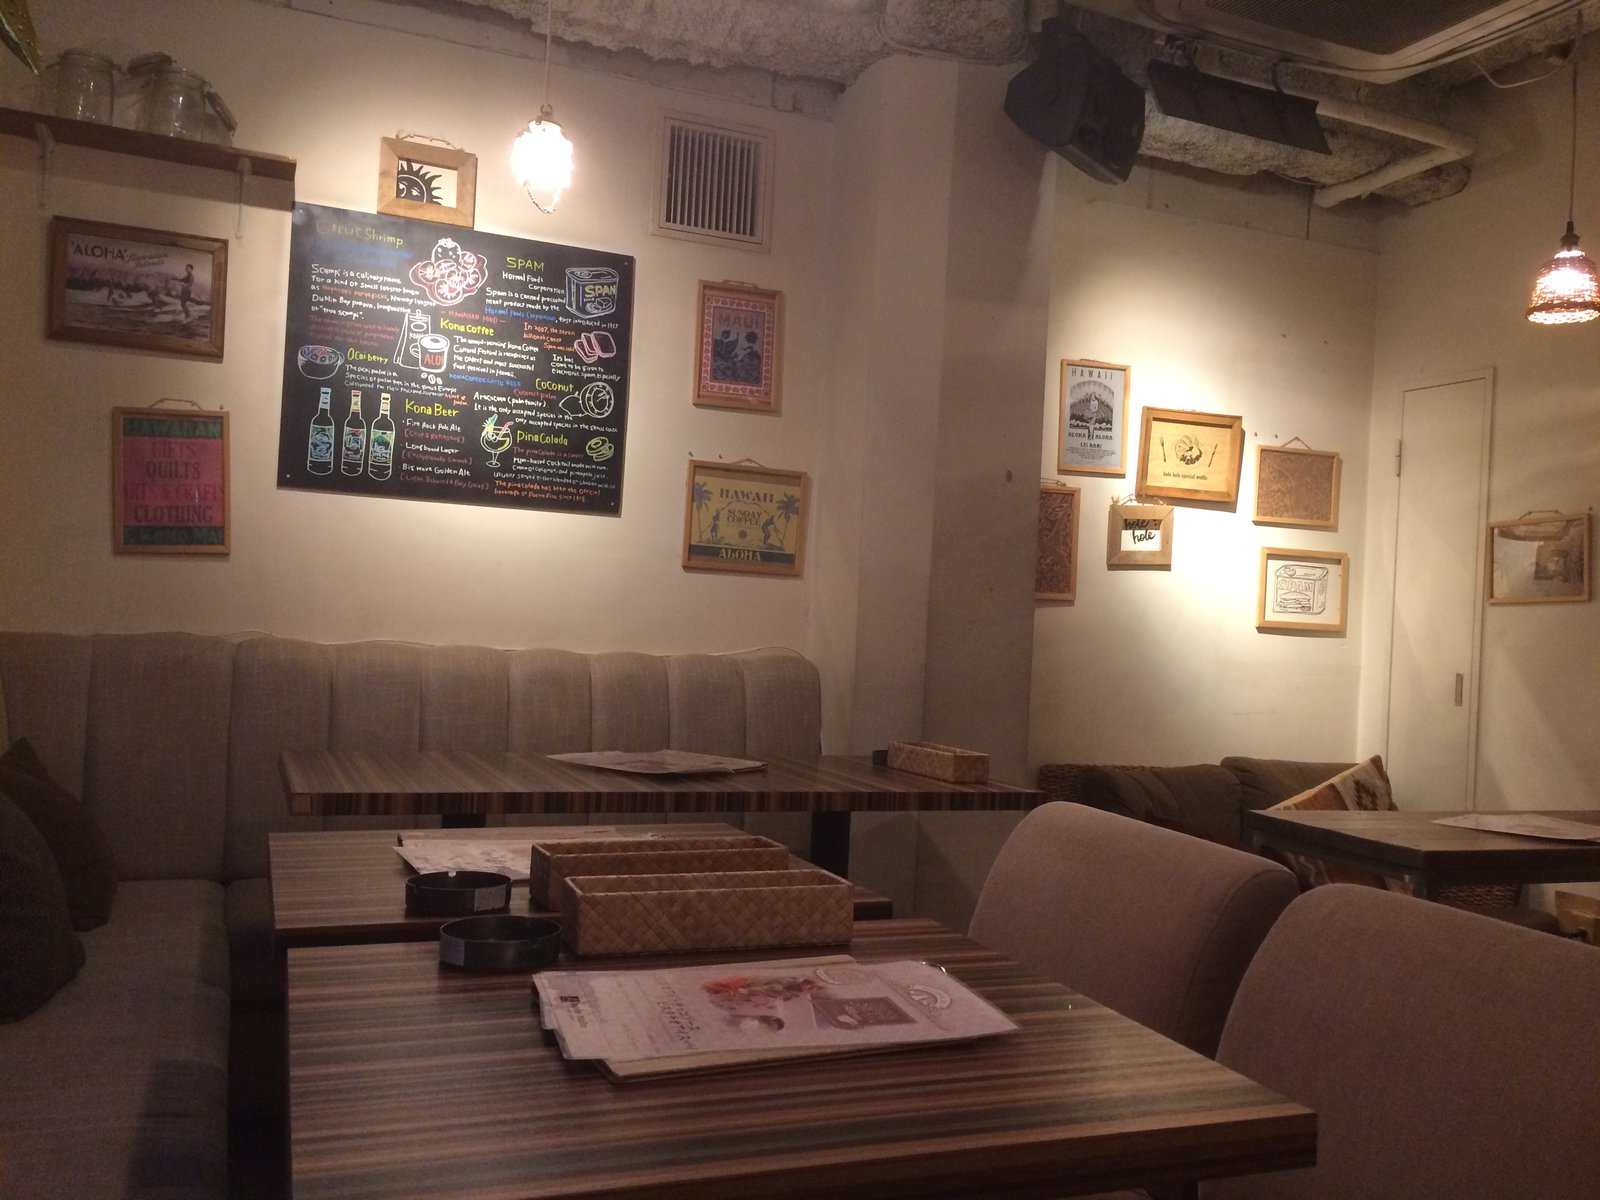 【閉店】hole hole cafe&diner 渋谷